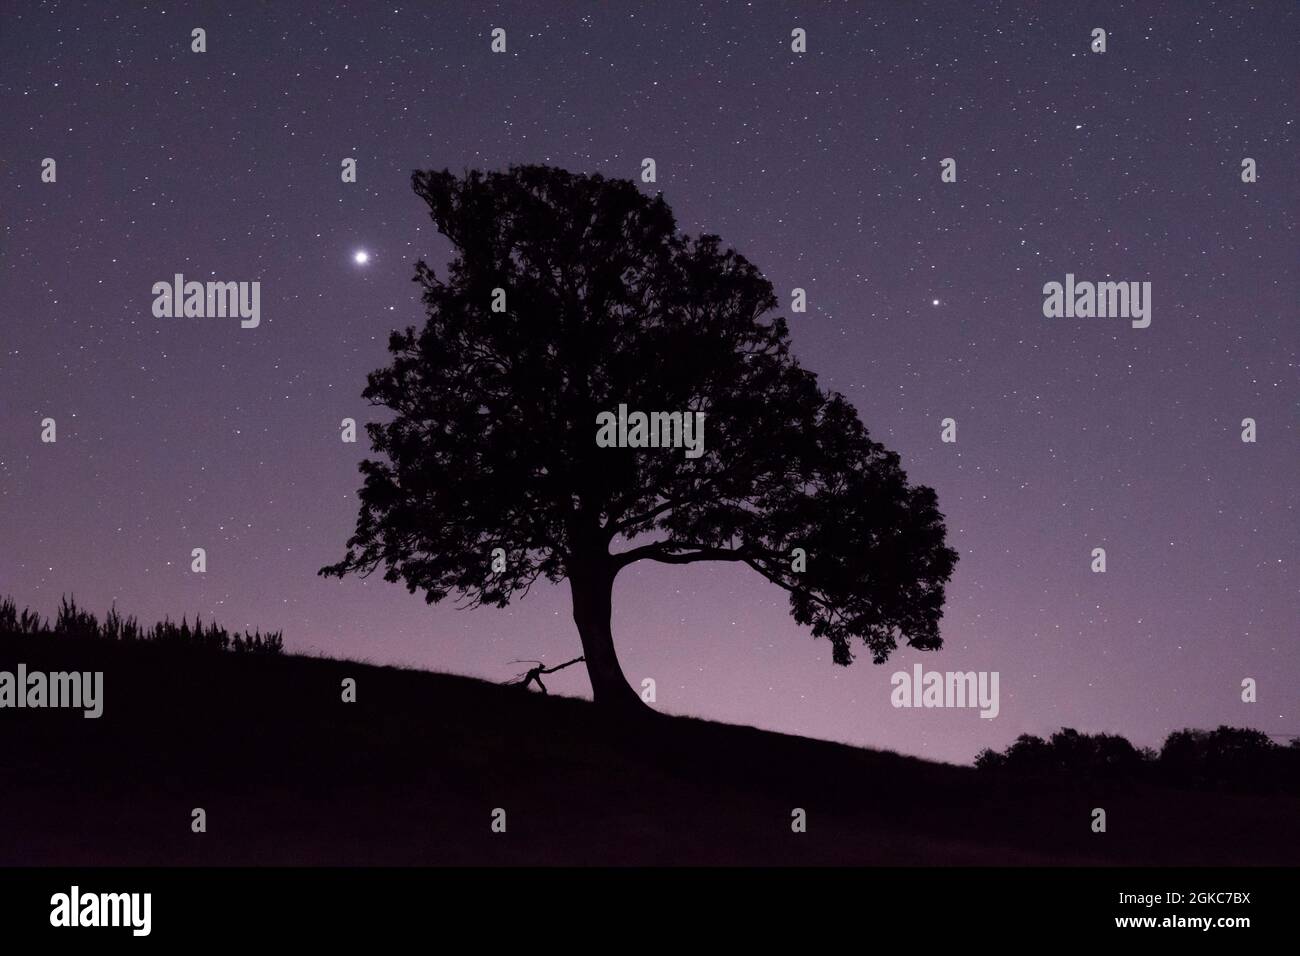 Stelle e pianeti Giove e Saturno accanto alla silhouette dell'albero, Giove luminoso a sinistra dell'albero, Saturno a destra dell'albero Sussex, UK, cielo notturno, Foto Stock